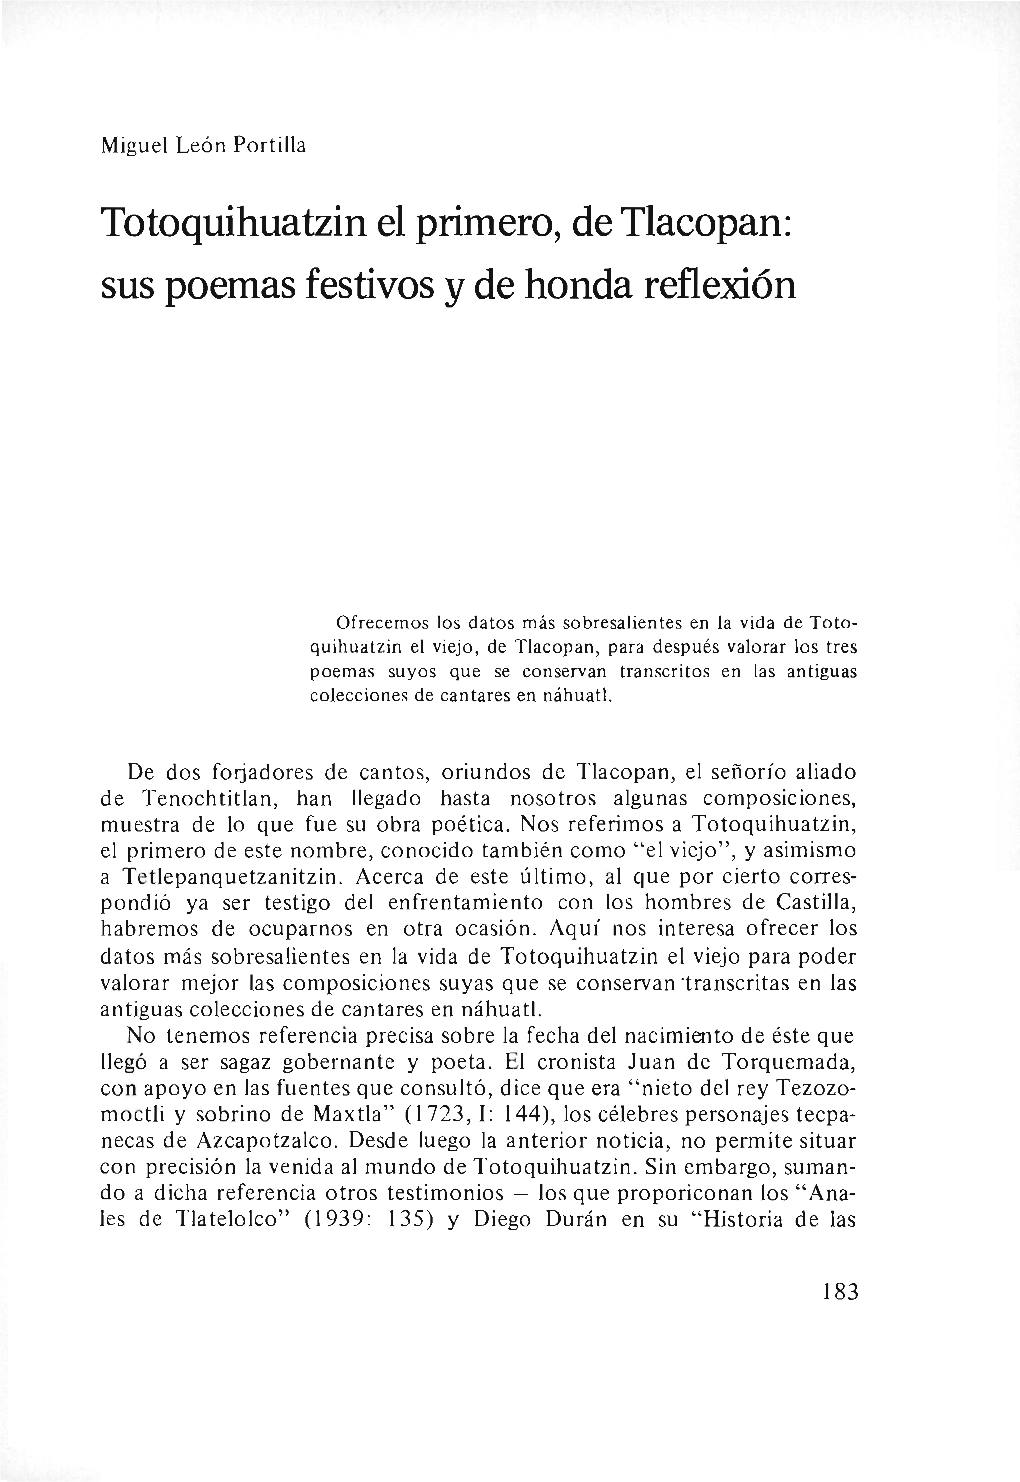 Totoquihuatzin El Primero, Detlacopan: Sus Poemas Festivos Y De Honda Reflexión